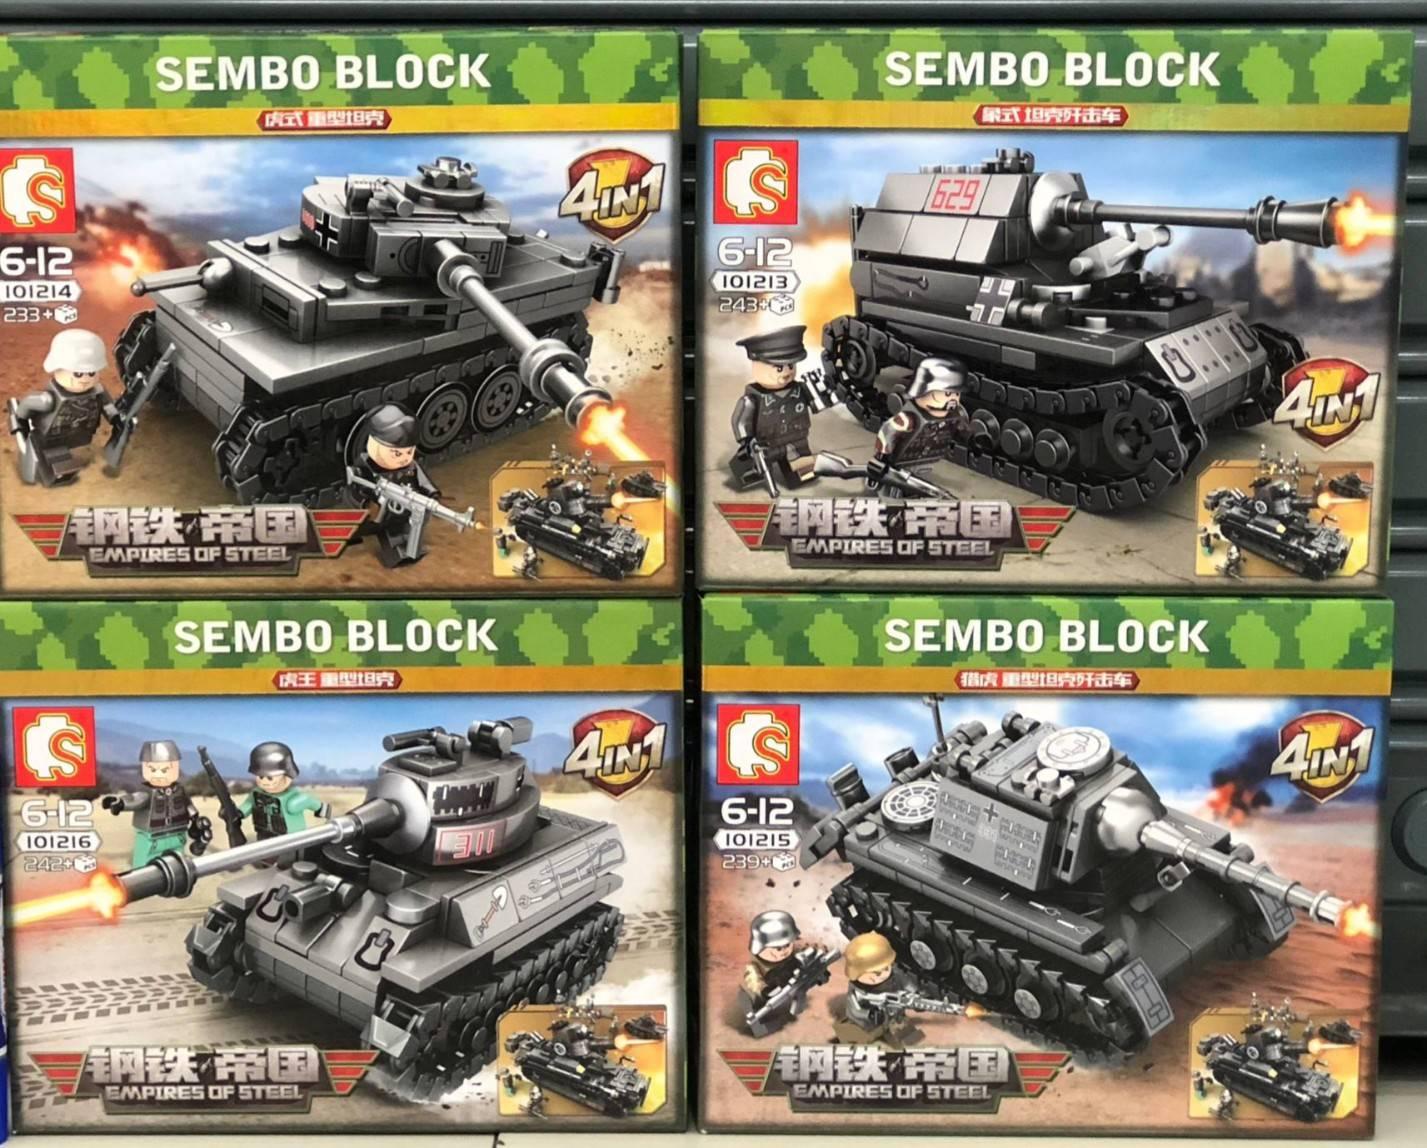 ss-toys เลโก้ทหาร SY 101213 รถถัง 4in1 สามารถต่อรวมกันเป็นรถถังคันใหญ่ 4กล่อง